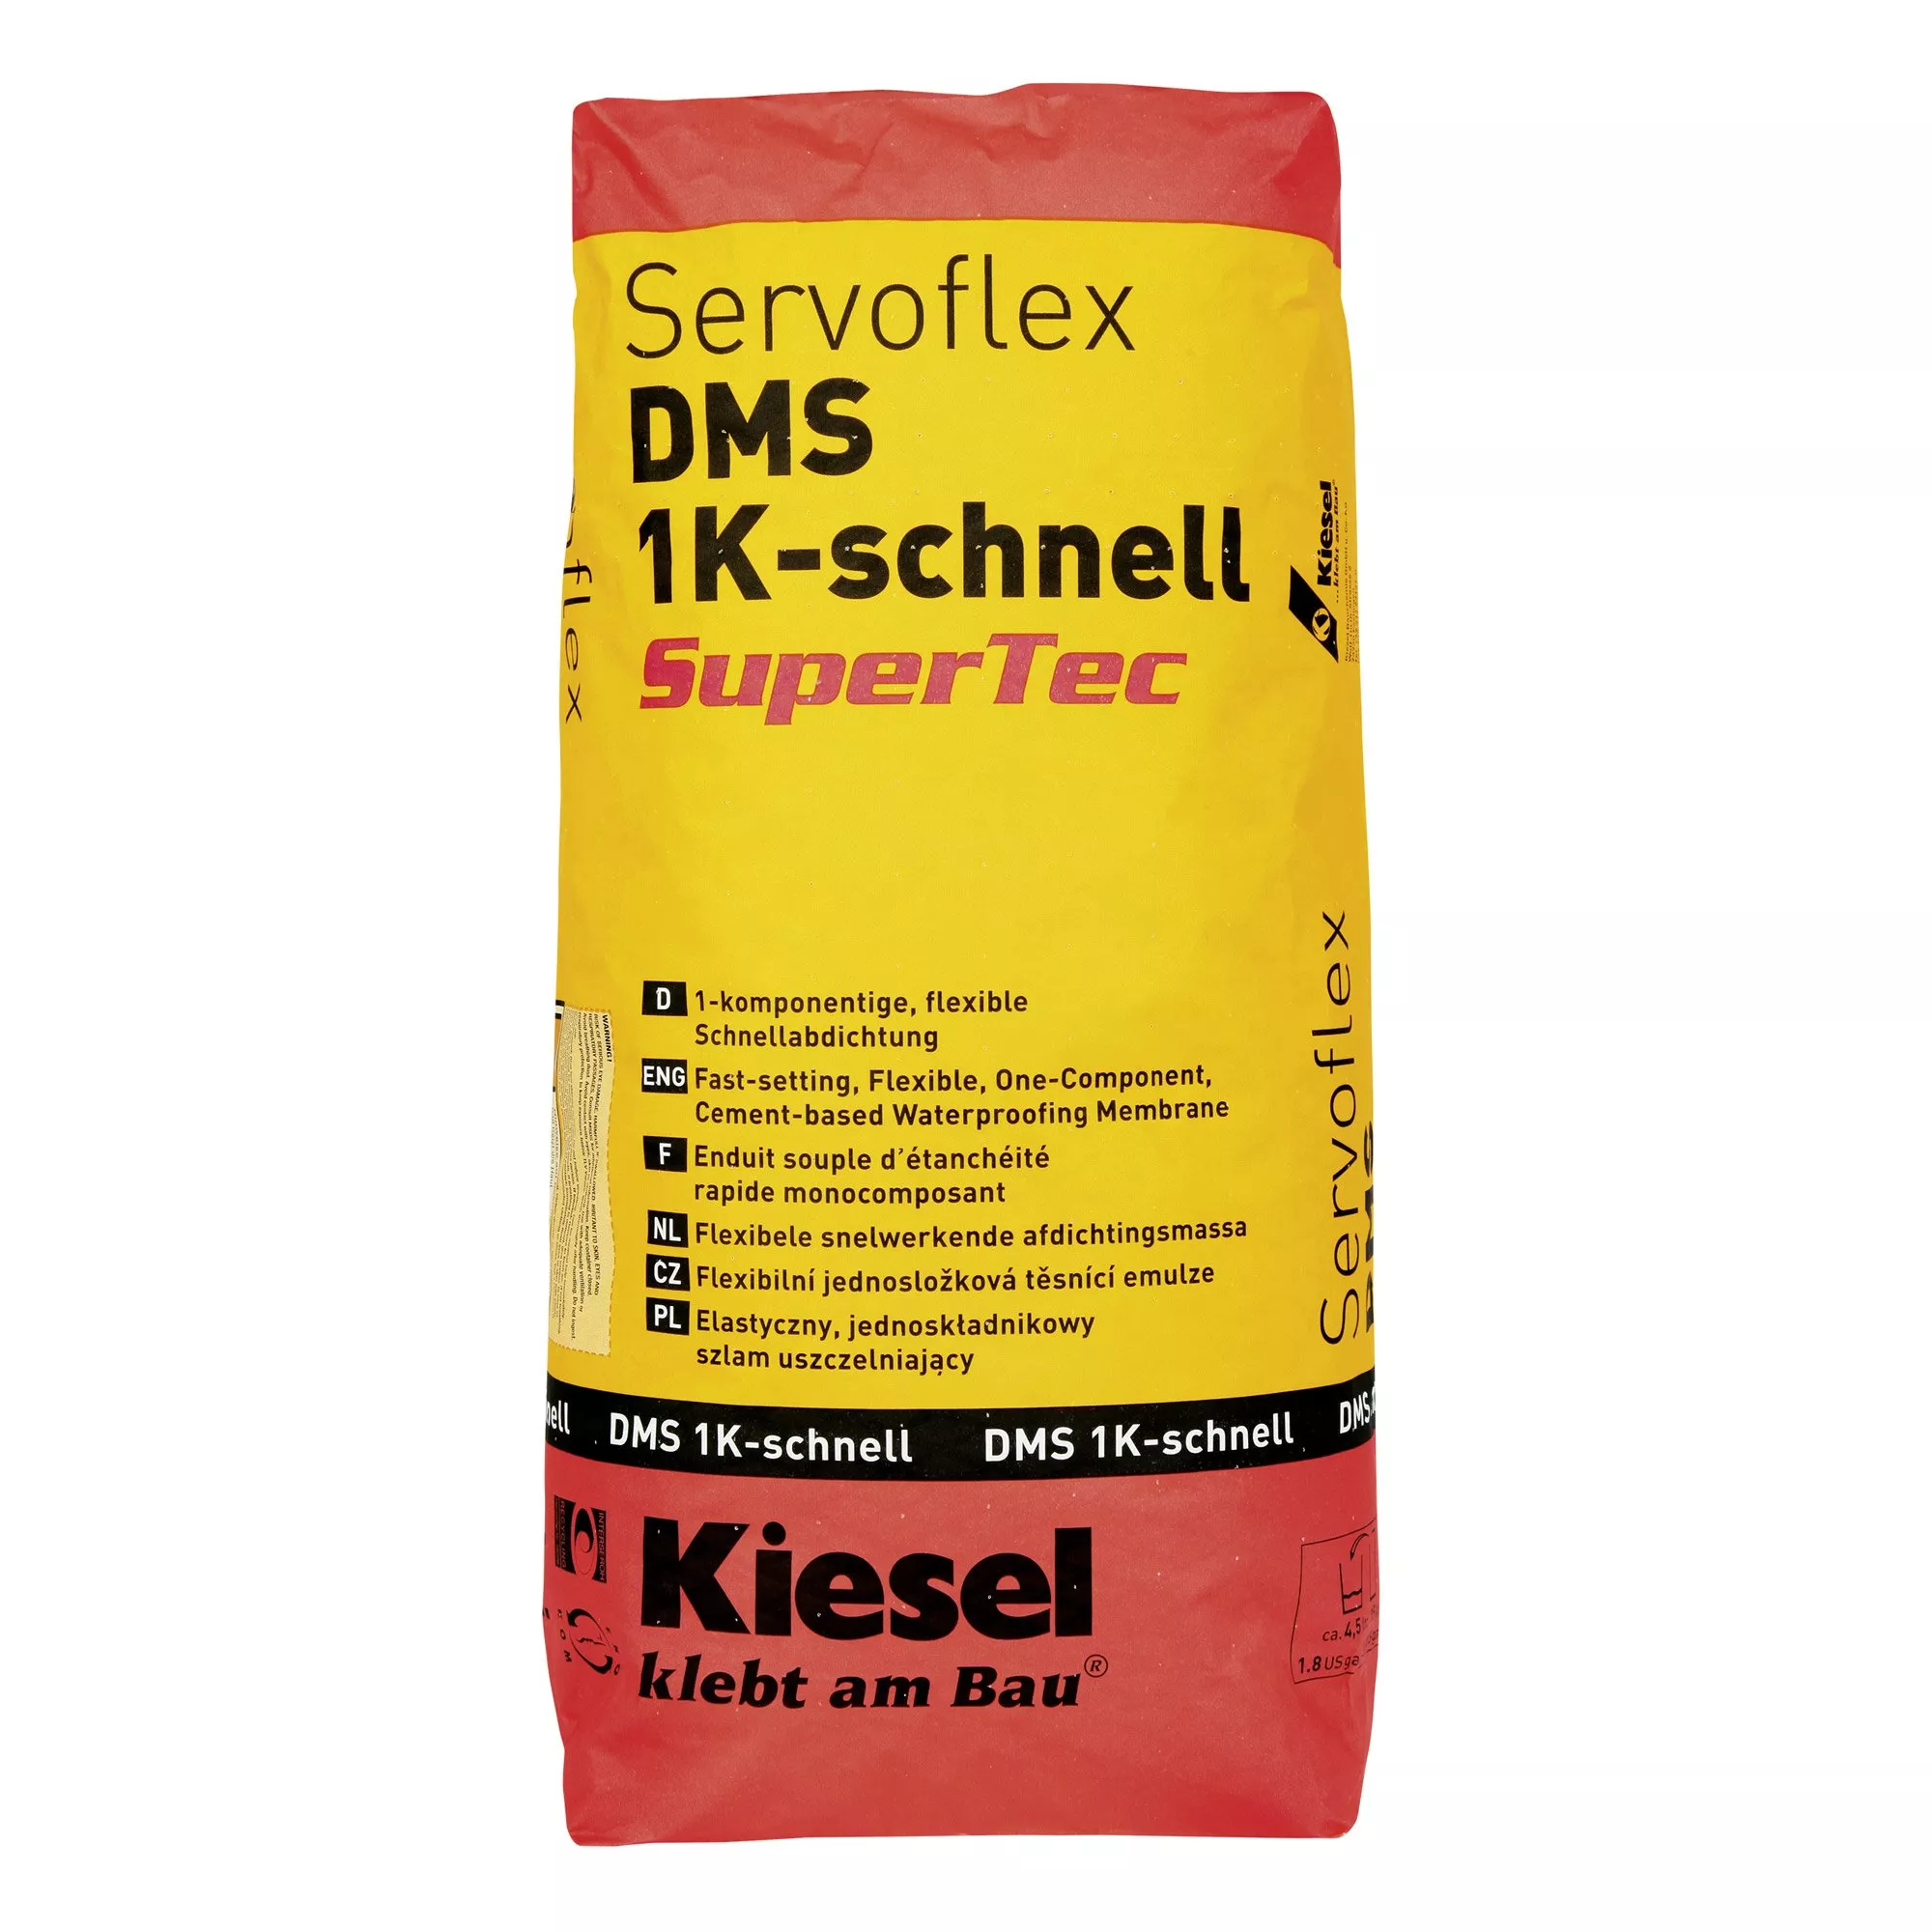 Kiesel Servoflex DMS 1K Snabb SuperTec - Flexibel Snabb Tätning (15 Kg)